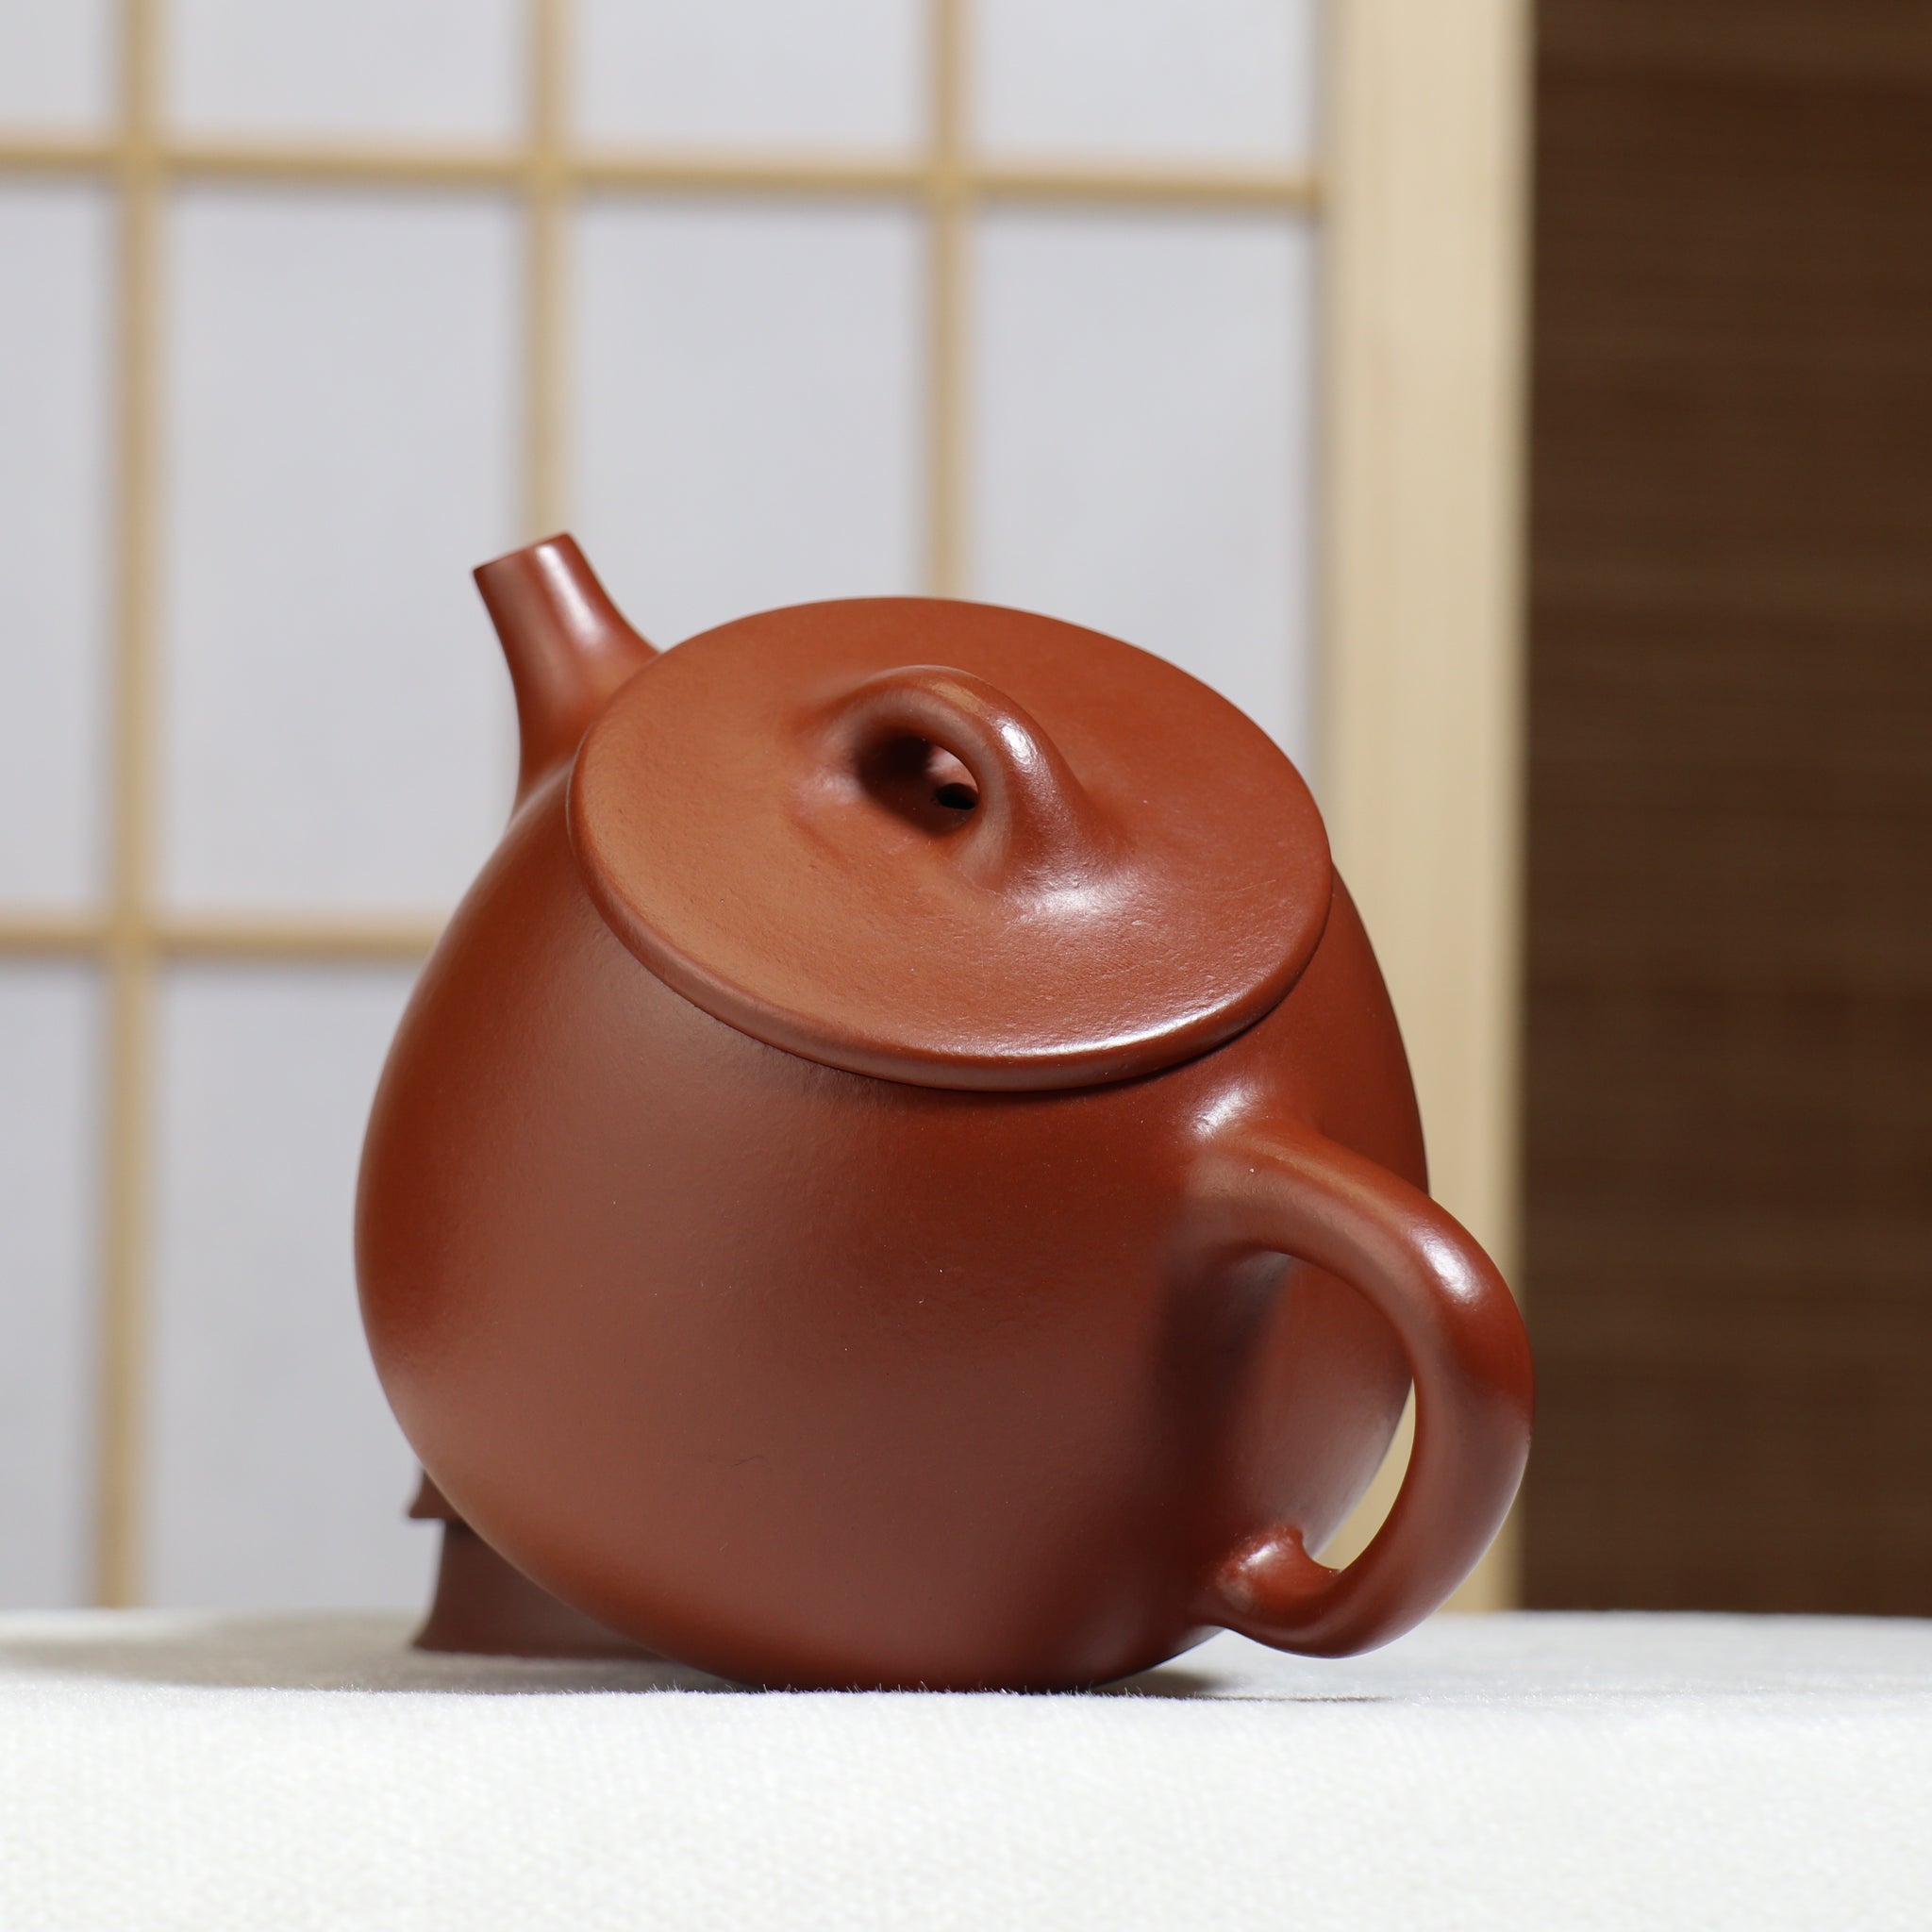 （已售出）【高石瓢】原礦小煤窯朱泥簡樸紫砂茶壺